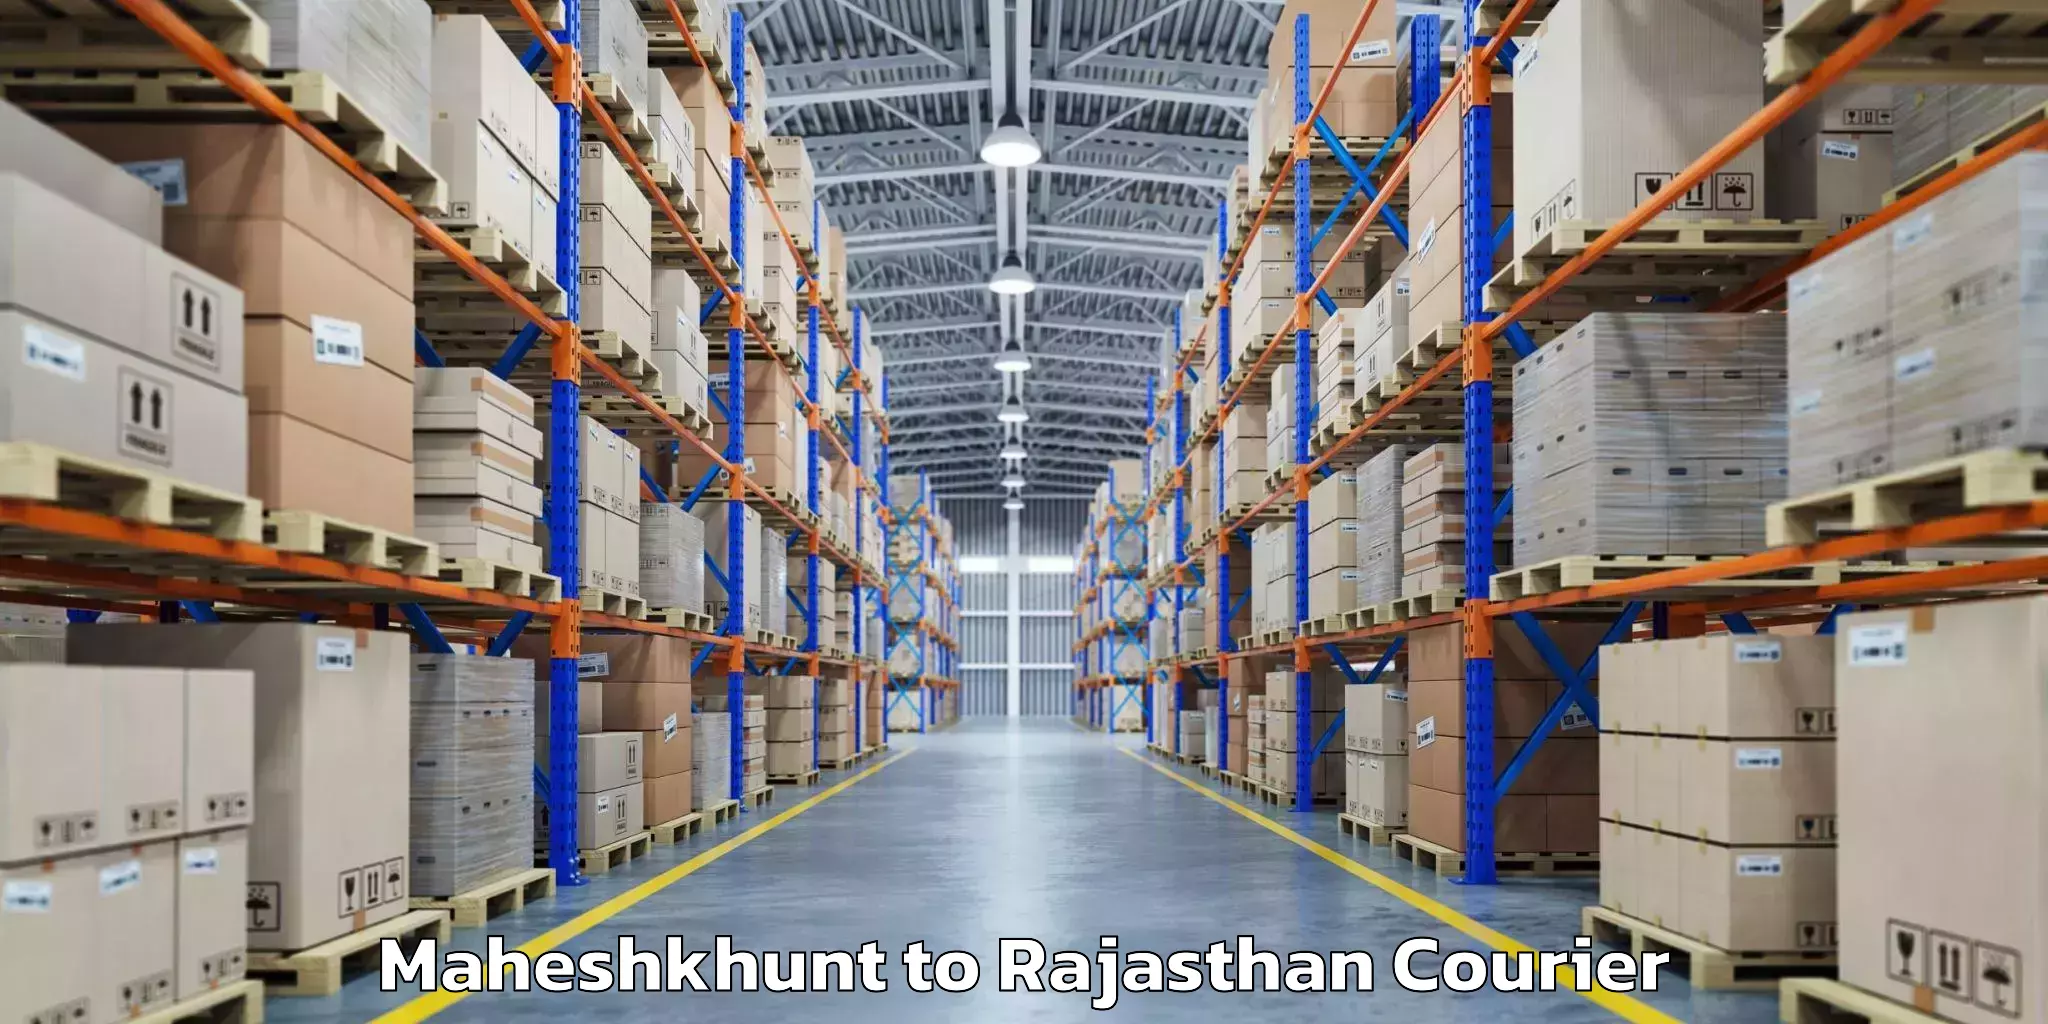 Luggage delivery network Maheshkhunt to Banswara